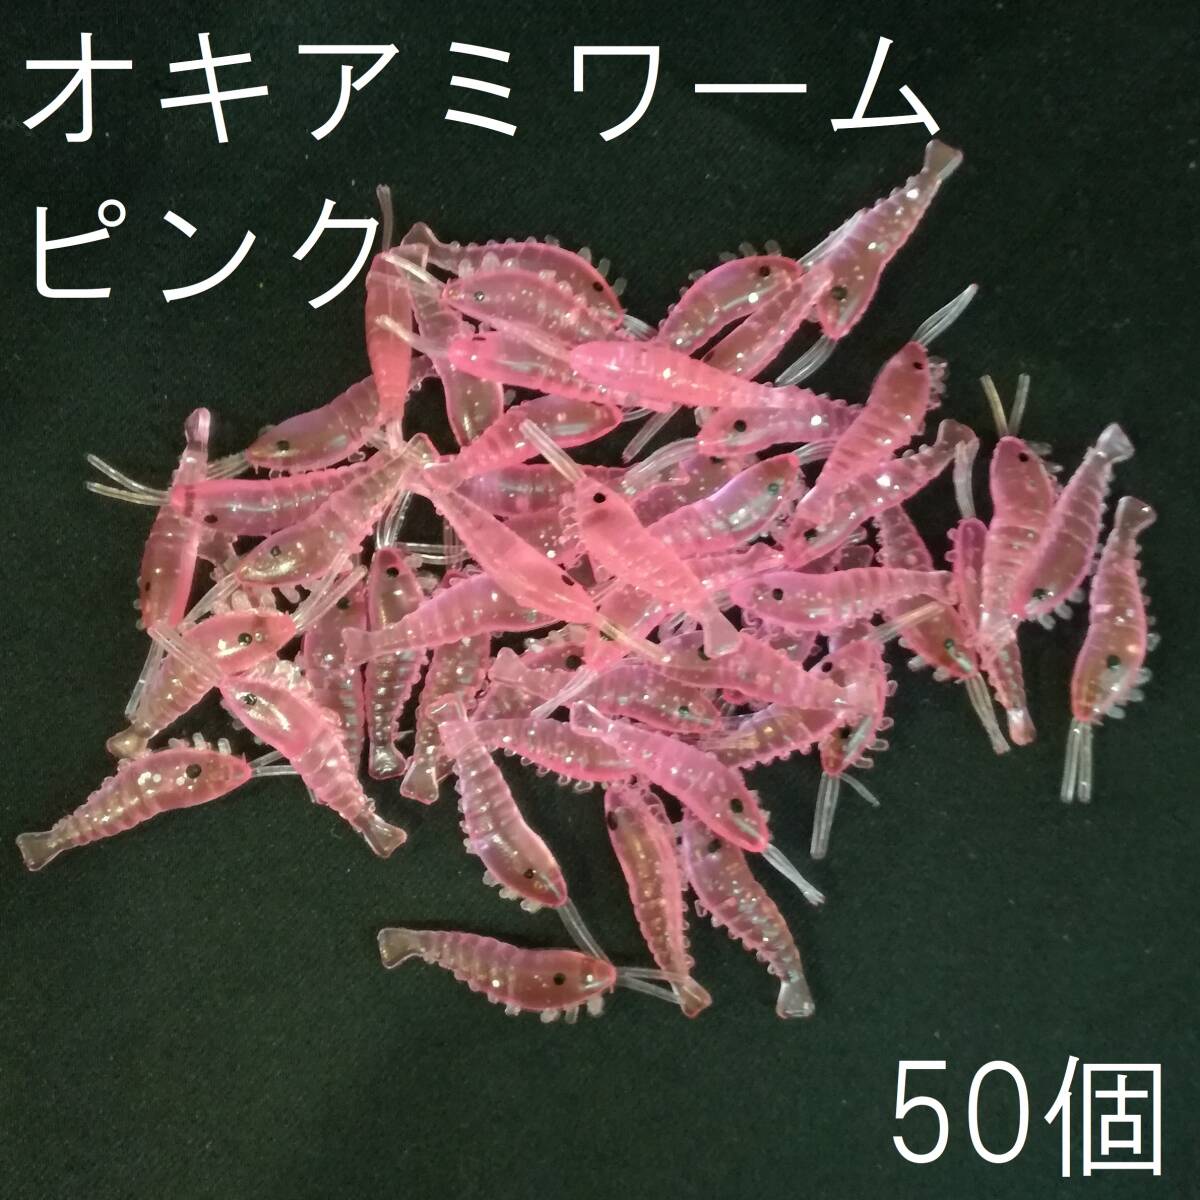 オキアミワーム 大量 50個セット 小エビワーム シュリンプ ピンク 釣り アジング サビキ 穴釣り メバル カサゴ ソイ ロックフィッシュ 根魚の画像1